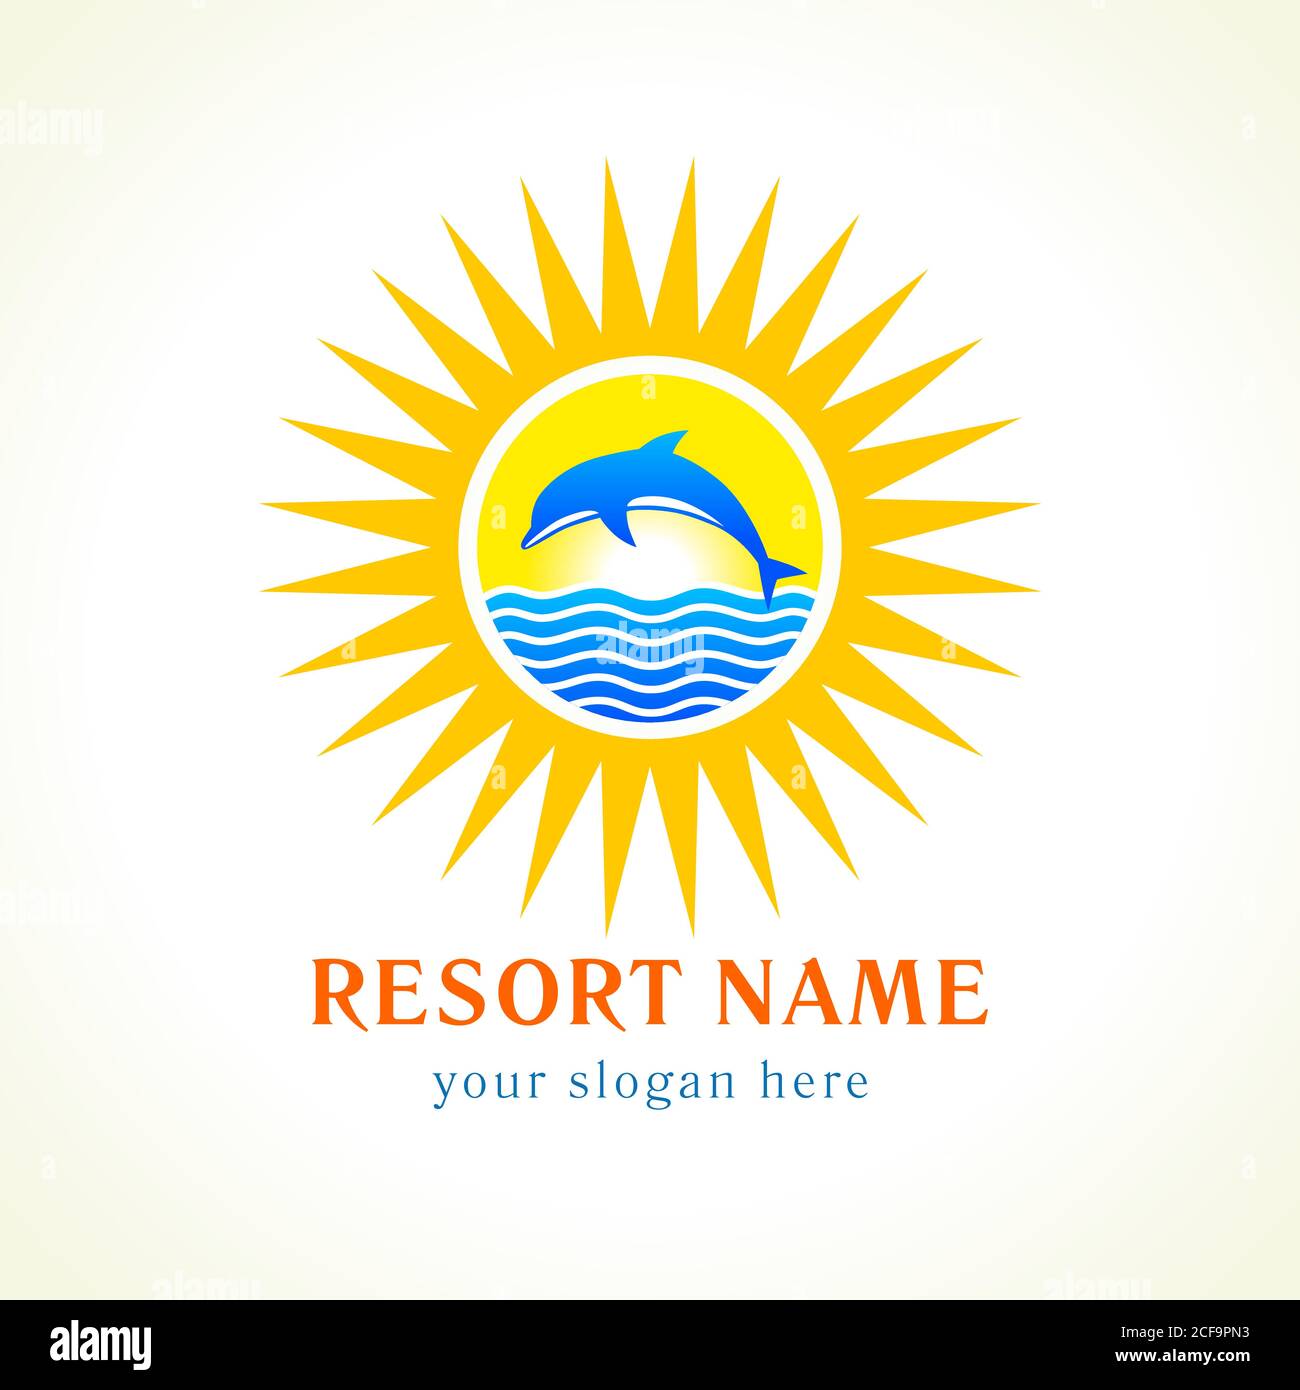 Dolphin Sprünge, Meer, Sonne, Reise-Vektor-Logo. Branding Identität von Hotels, touristischen Unternehmen, Spa, Strand-Service, Gesundheitswesen, Resort oder Hotel am Meer Stock Vektor